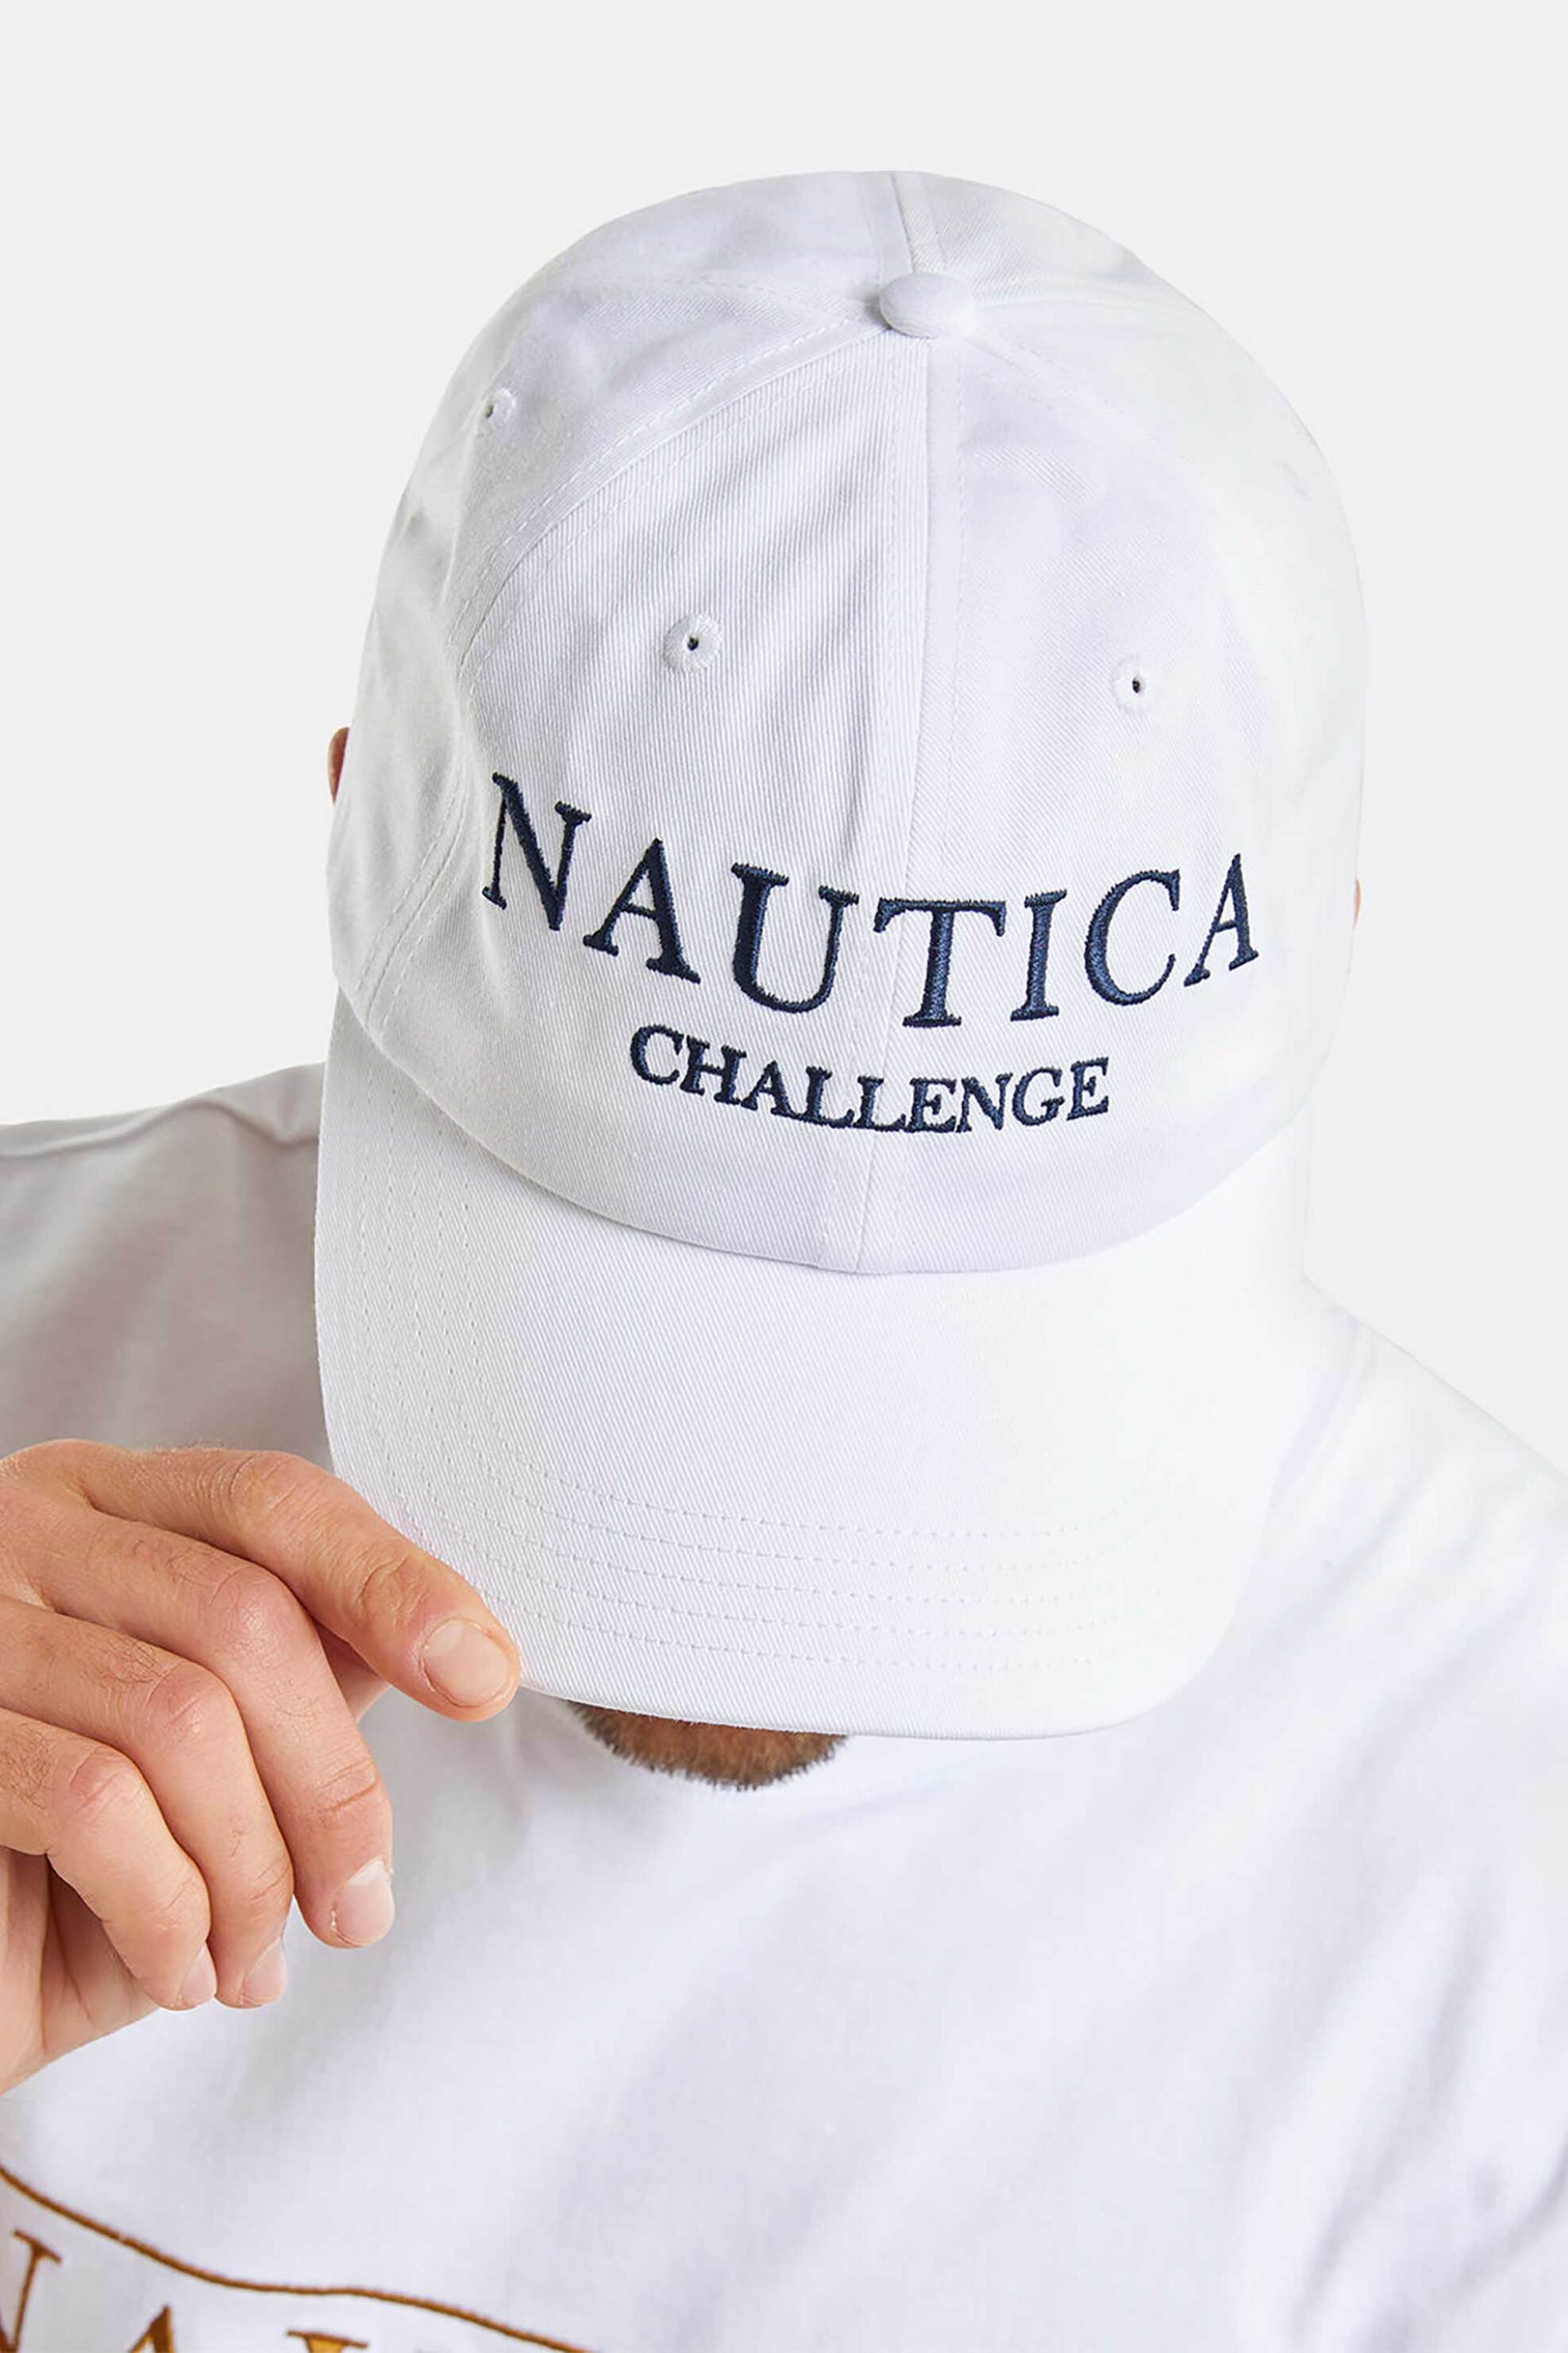 Ανδρική Μόδα > Ανδρικά Αξεσουάρ > Ανδρικά Καπέλα & Σκούφοι Nautica ανδρικό καπέλο μονόχρωμο βαμβακερό με κεντημένο λογότυπο "Missori" - N9M01786 Λευκό